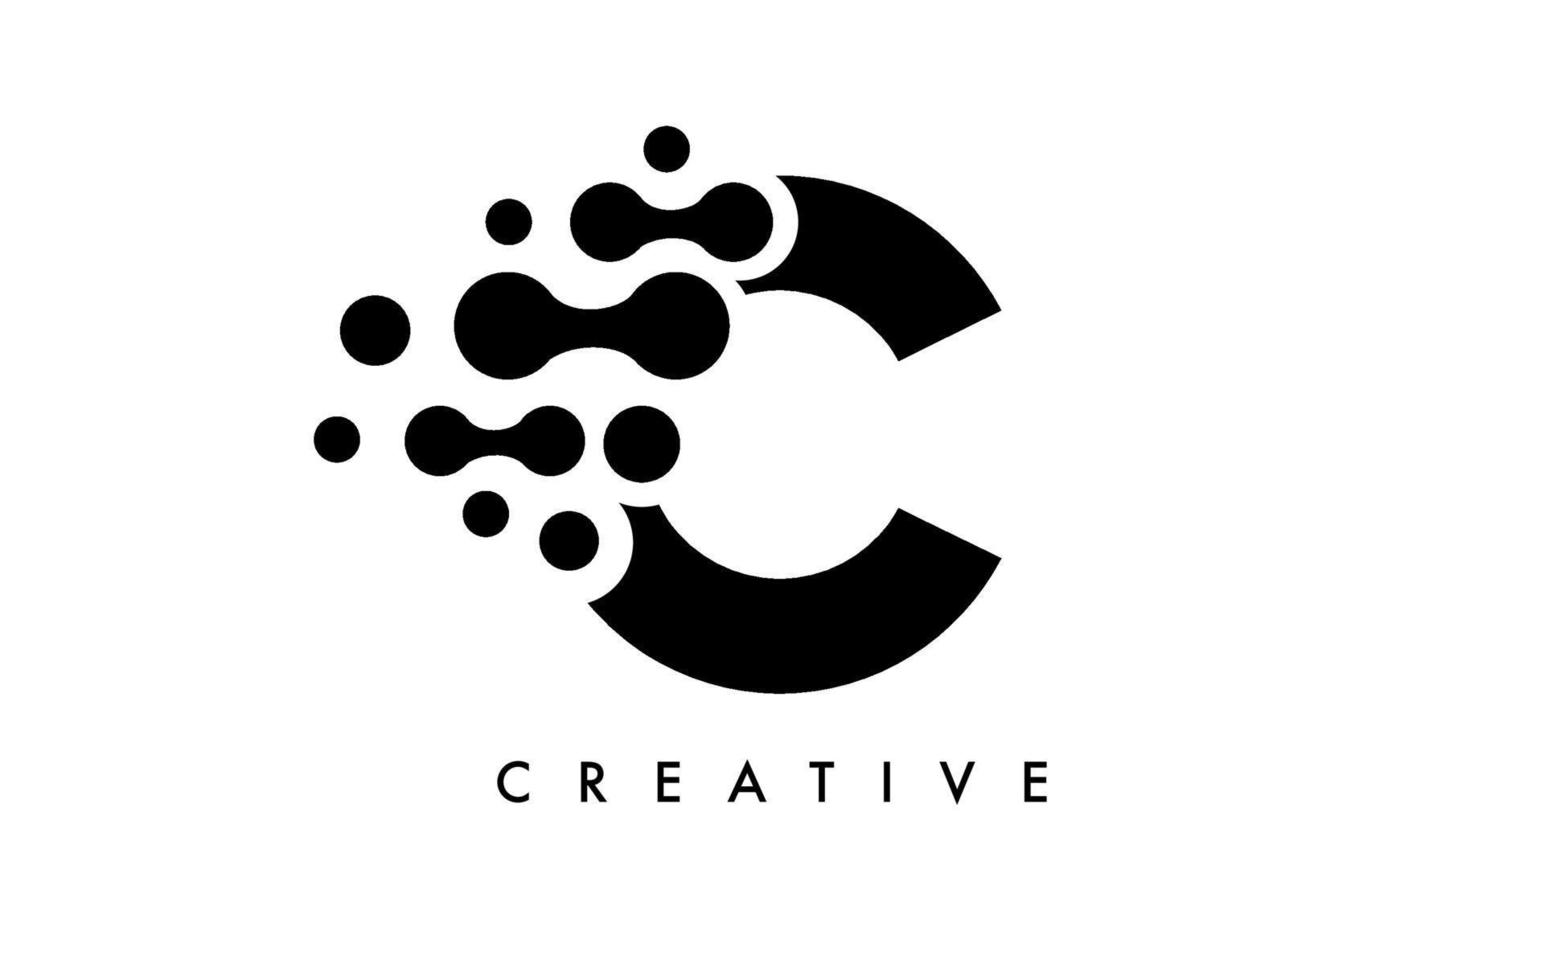 Buchstabe c punktiert Logo-Design mit schwarzen und weißen Farben auf schwarzem Hintergrundvektor vektor